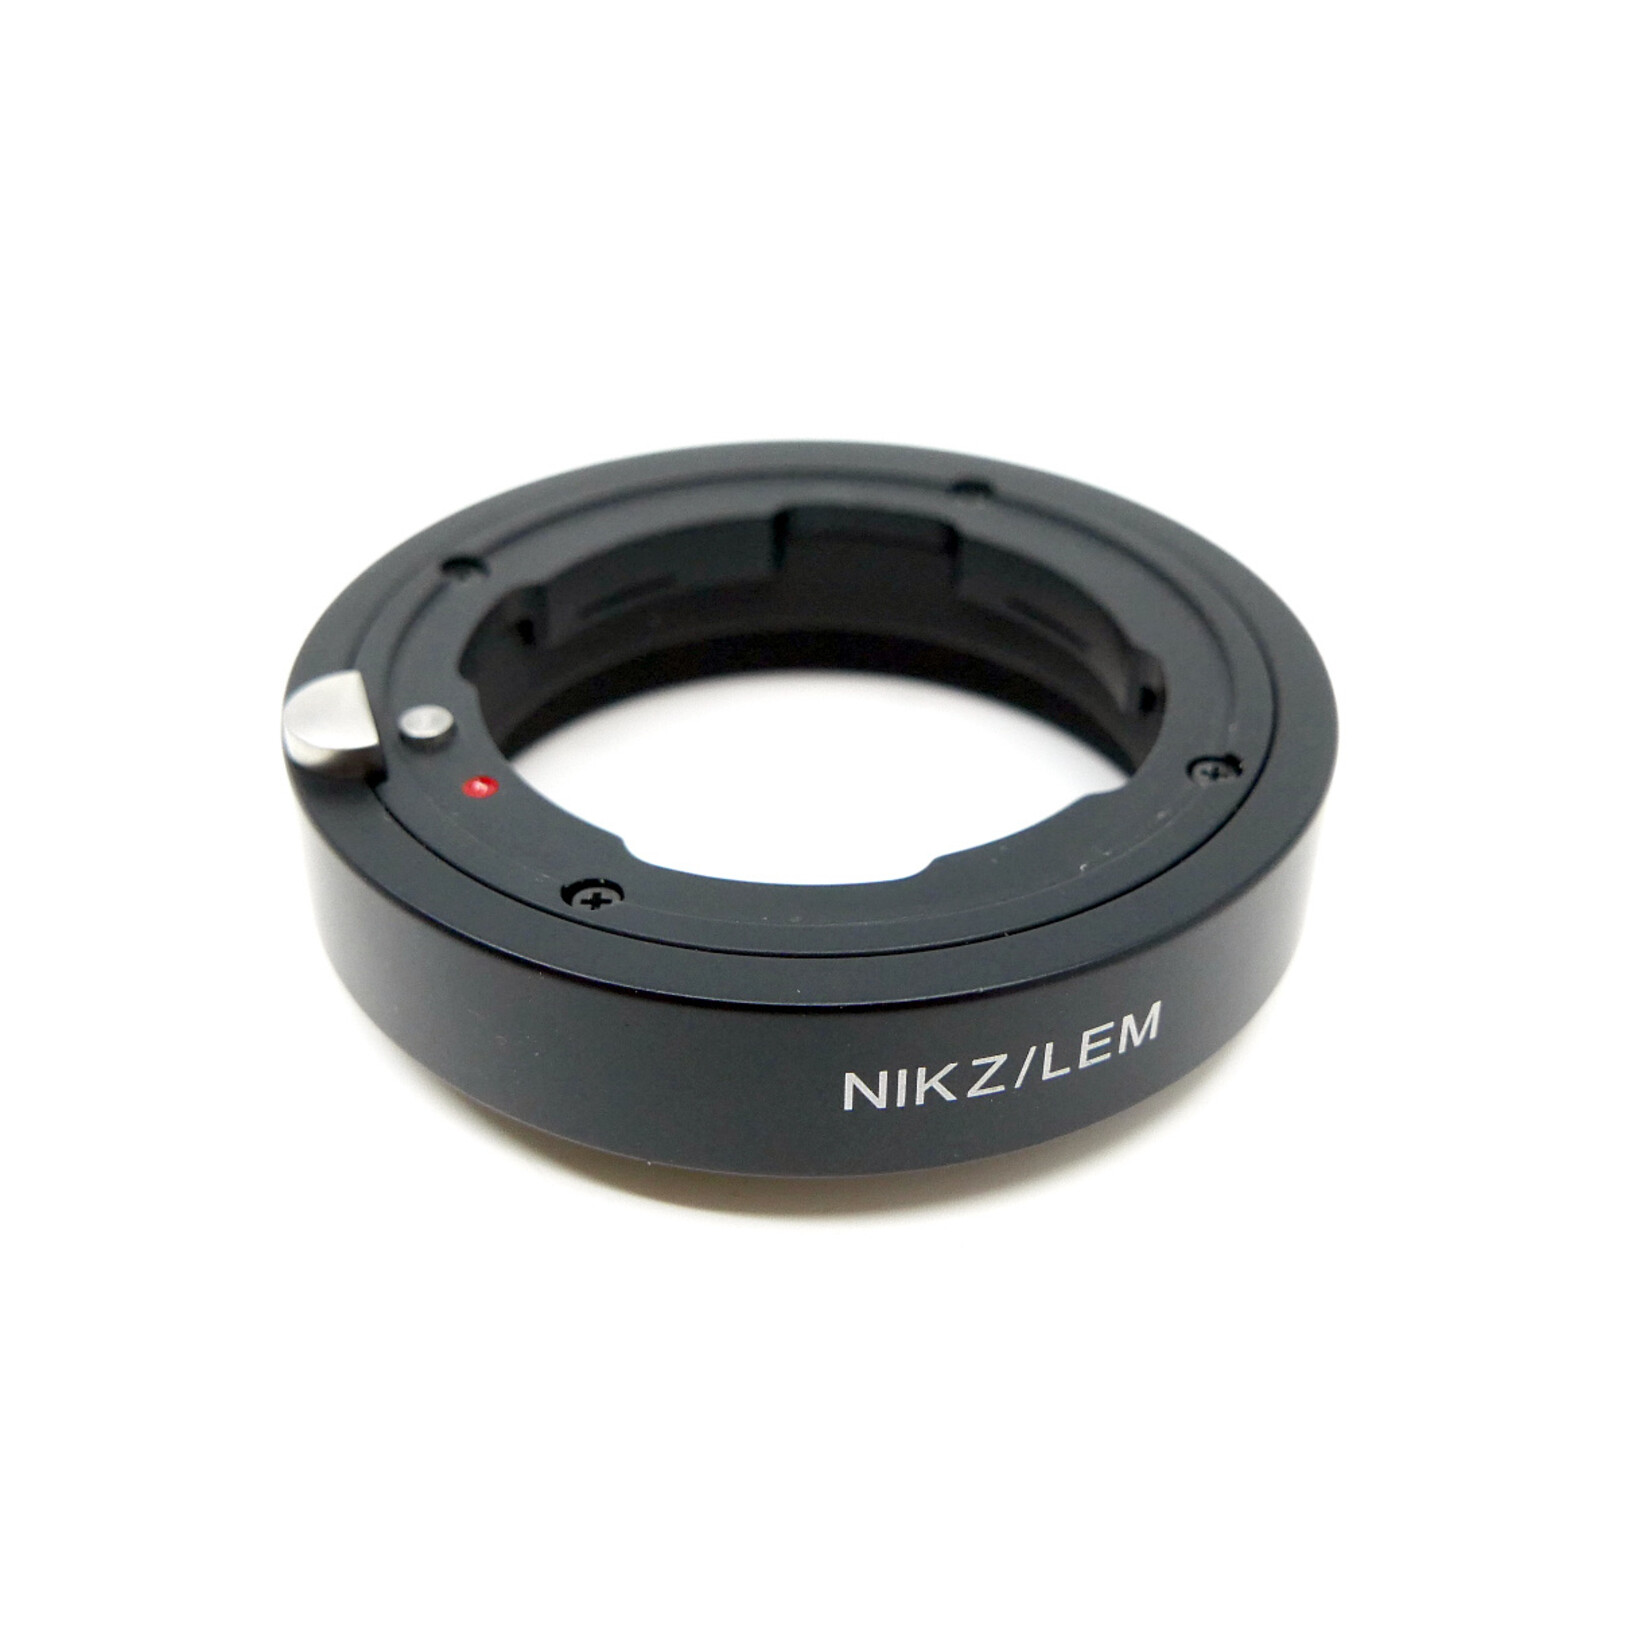 Novoflex Leica M Lens to Nikon Z-Mount Camera Adapter (Used)